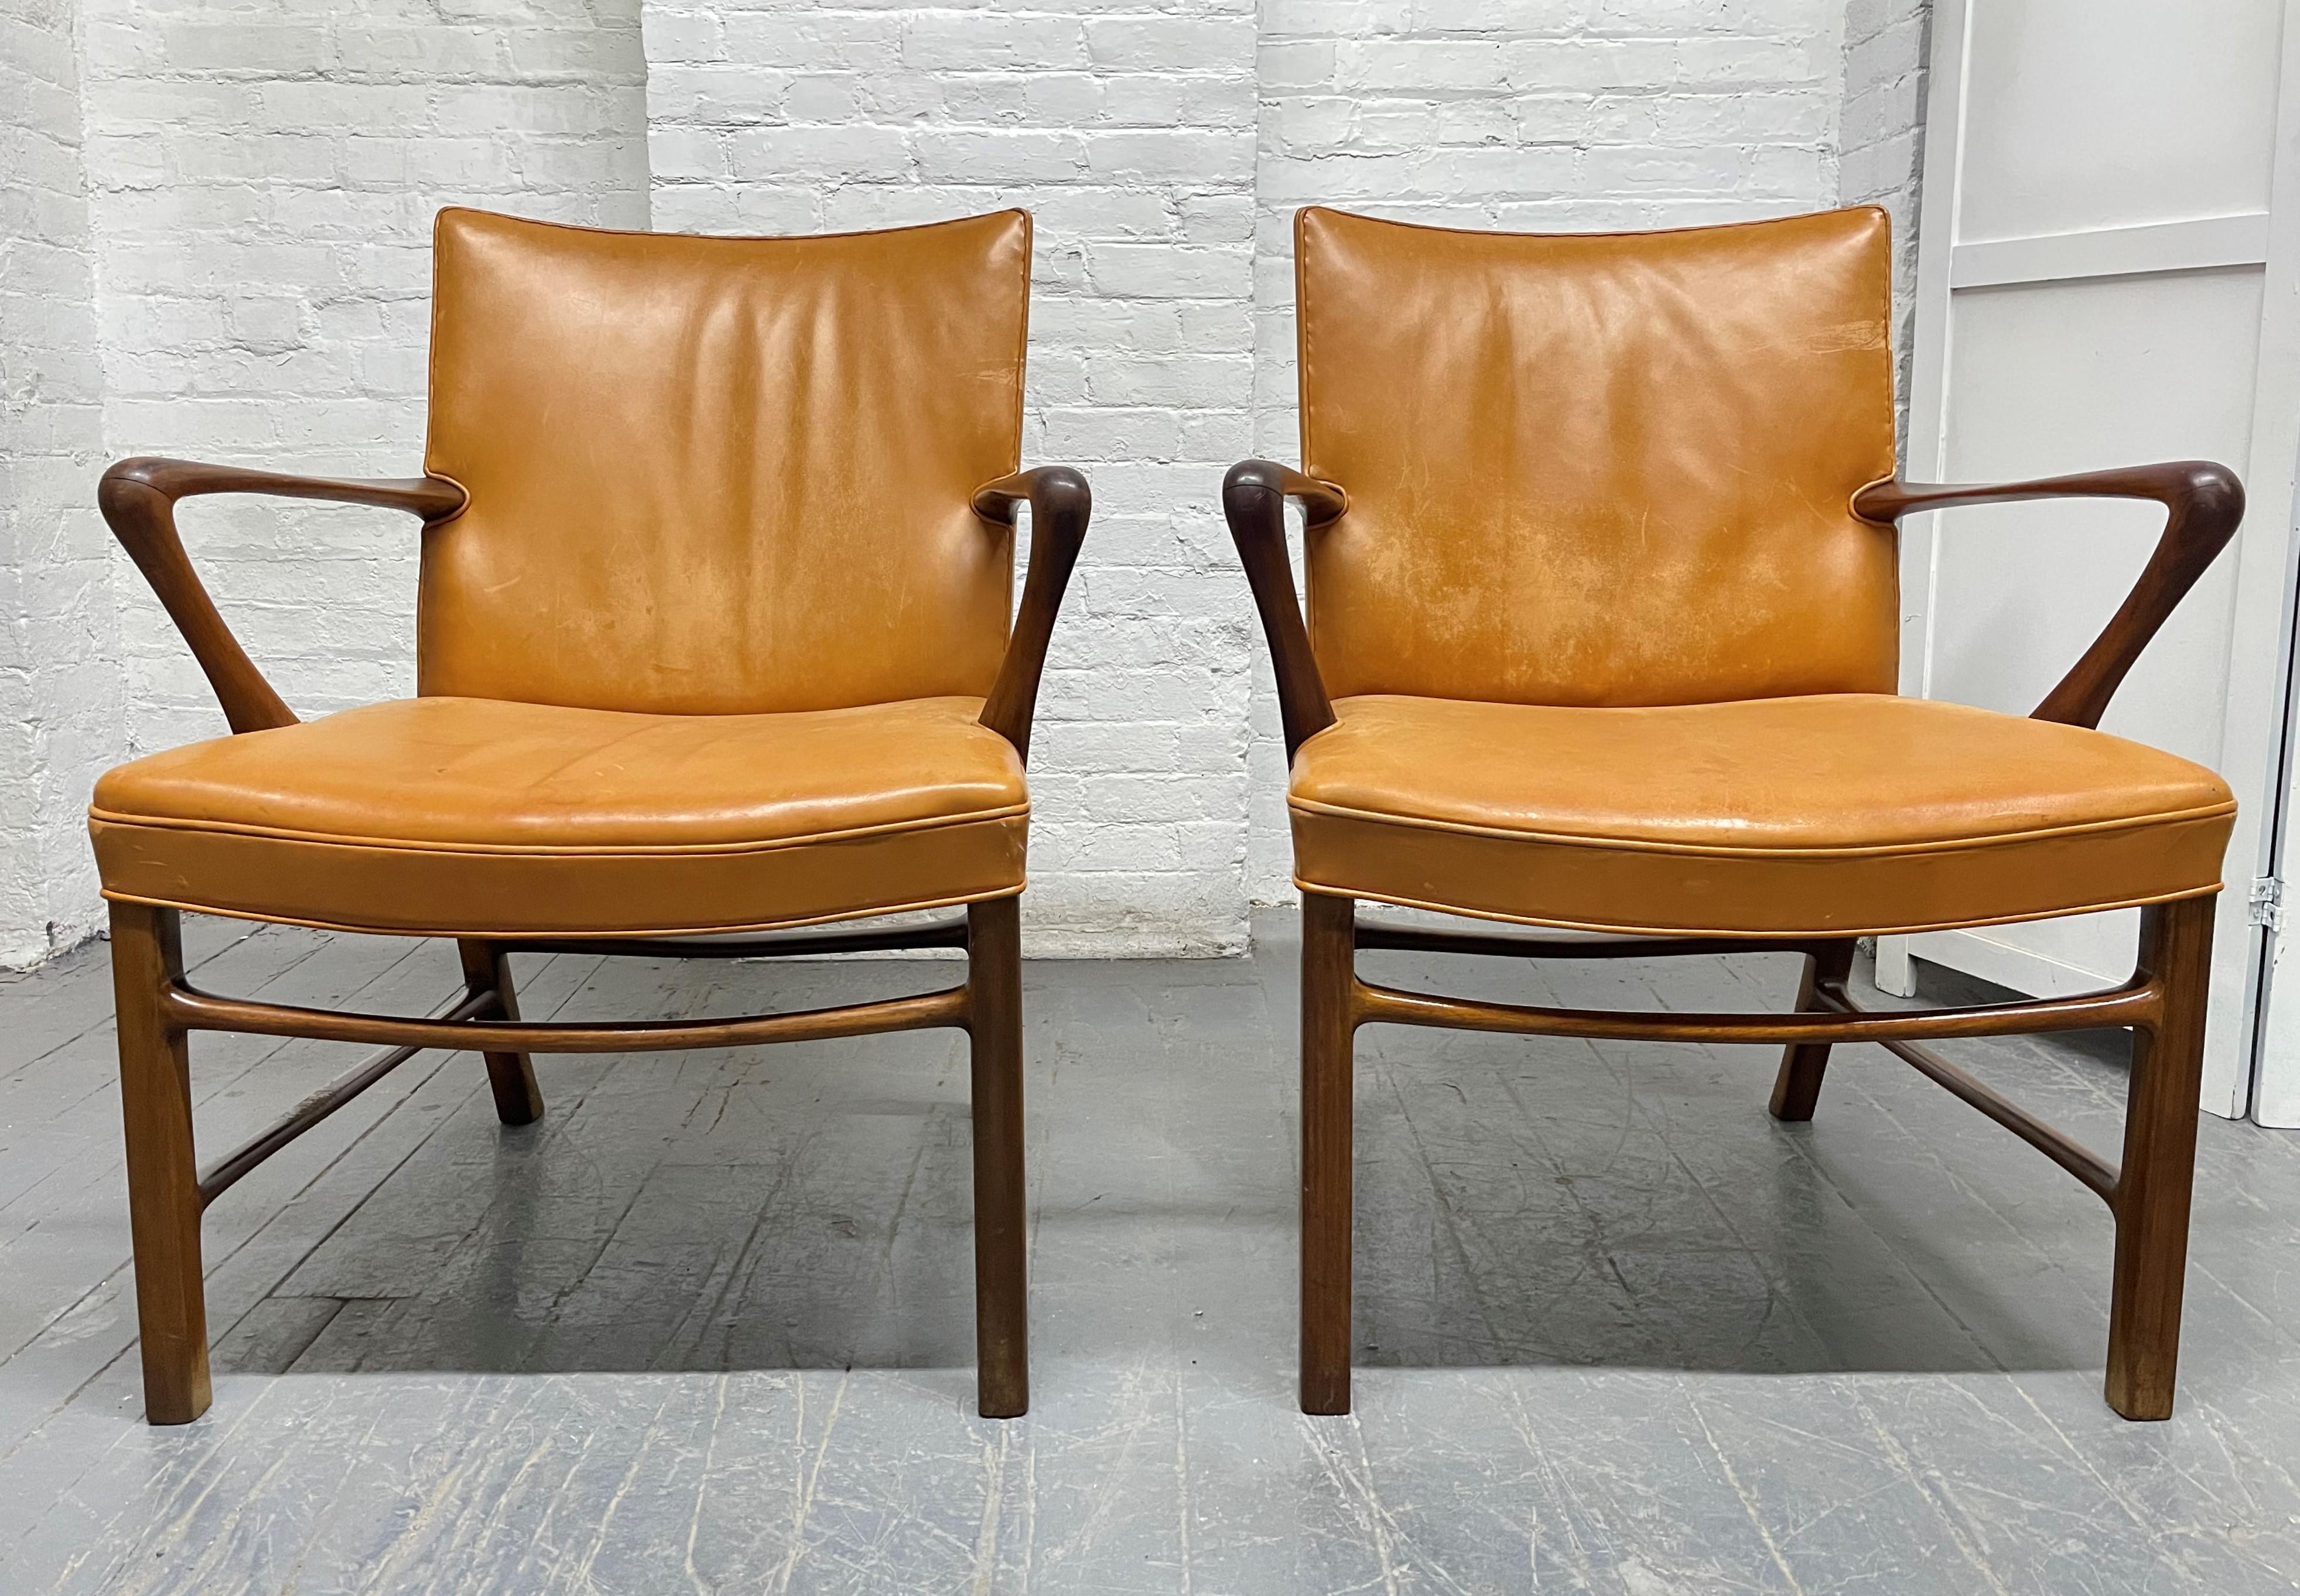 Paire de fauteuils Palle Suenson pour Jacob Kjaer. Les châssis des chaises sont en noyer et recouverts du cuir nigérien d'origine. Ces chaises ont de belles lignes et sont bien construites avec des accoudoirs courbés. Les chaises sont difficiles à